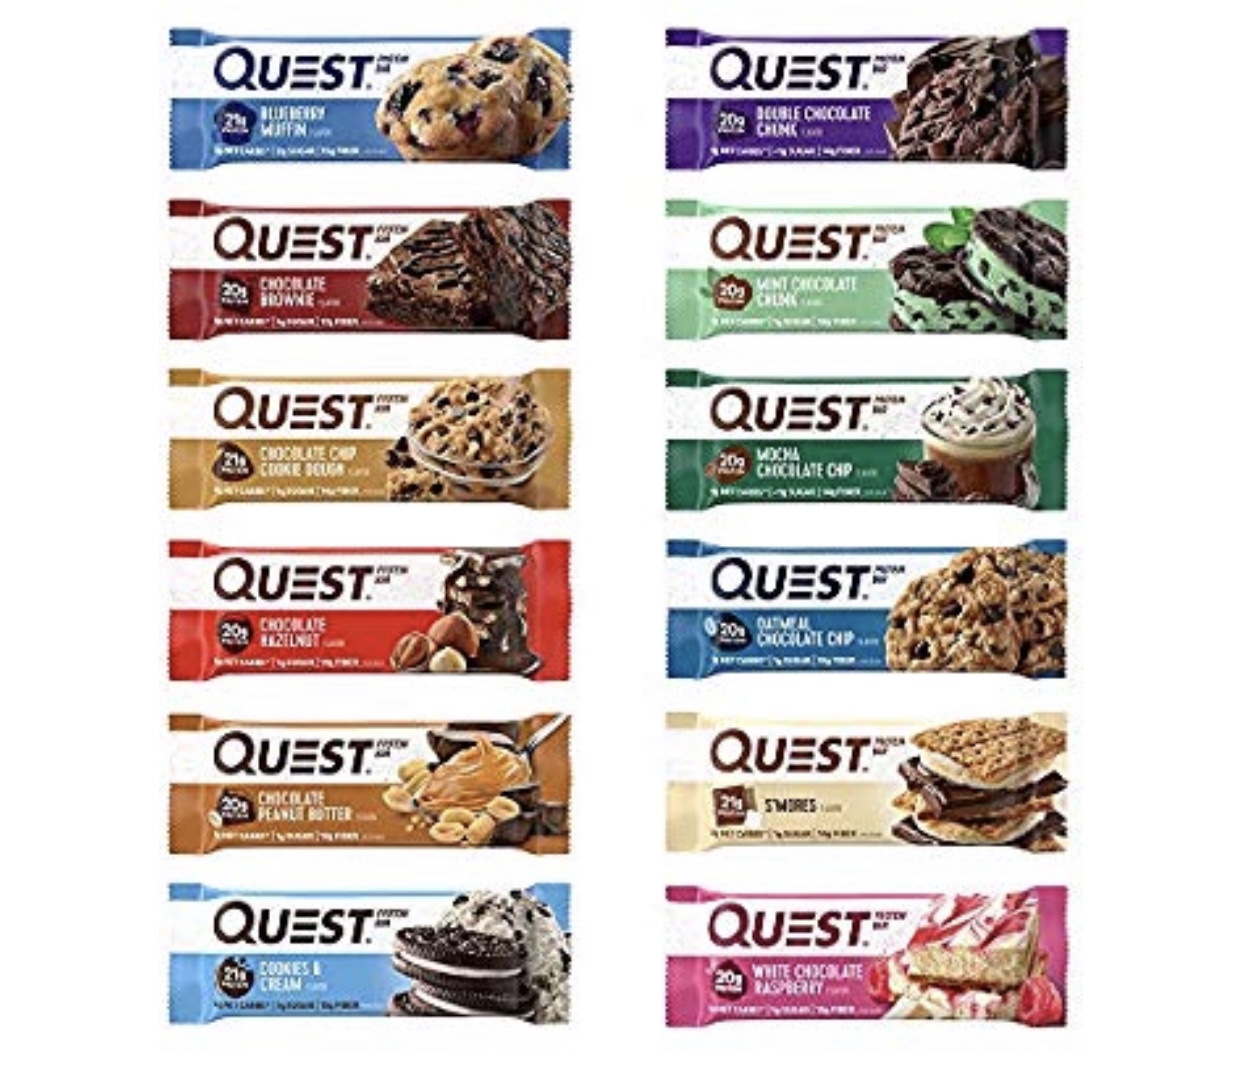 12 varieties of Quest protein bars